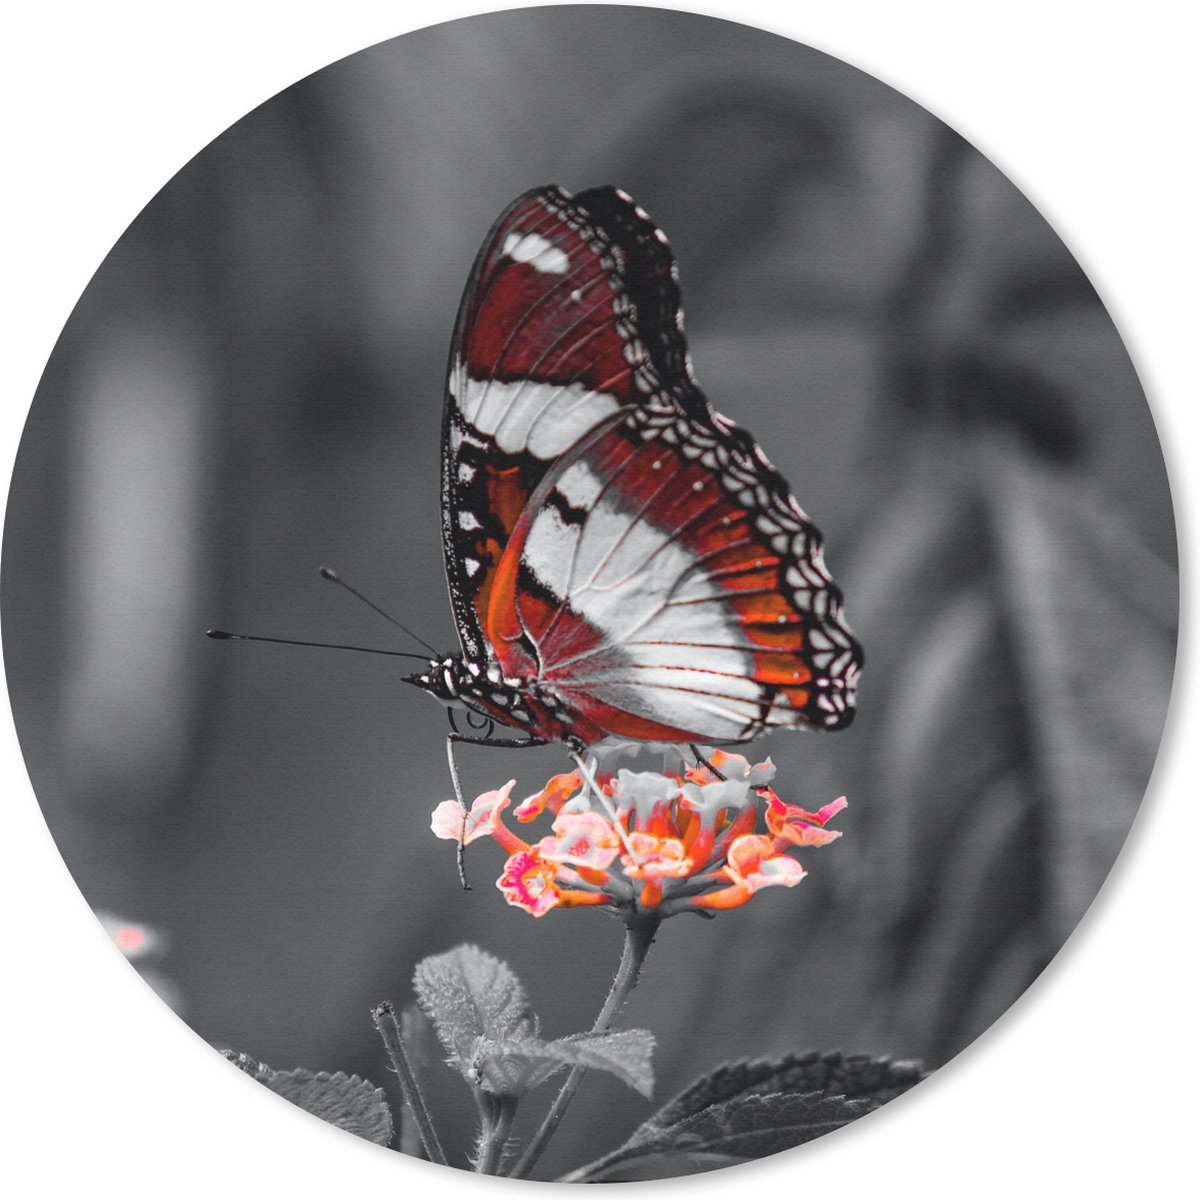 Muismat - Mousepad - Rond - Vlinder - Dieren - Bloemen - Zwart wit - Oranje - 40x40 cm - Ronde muismat